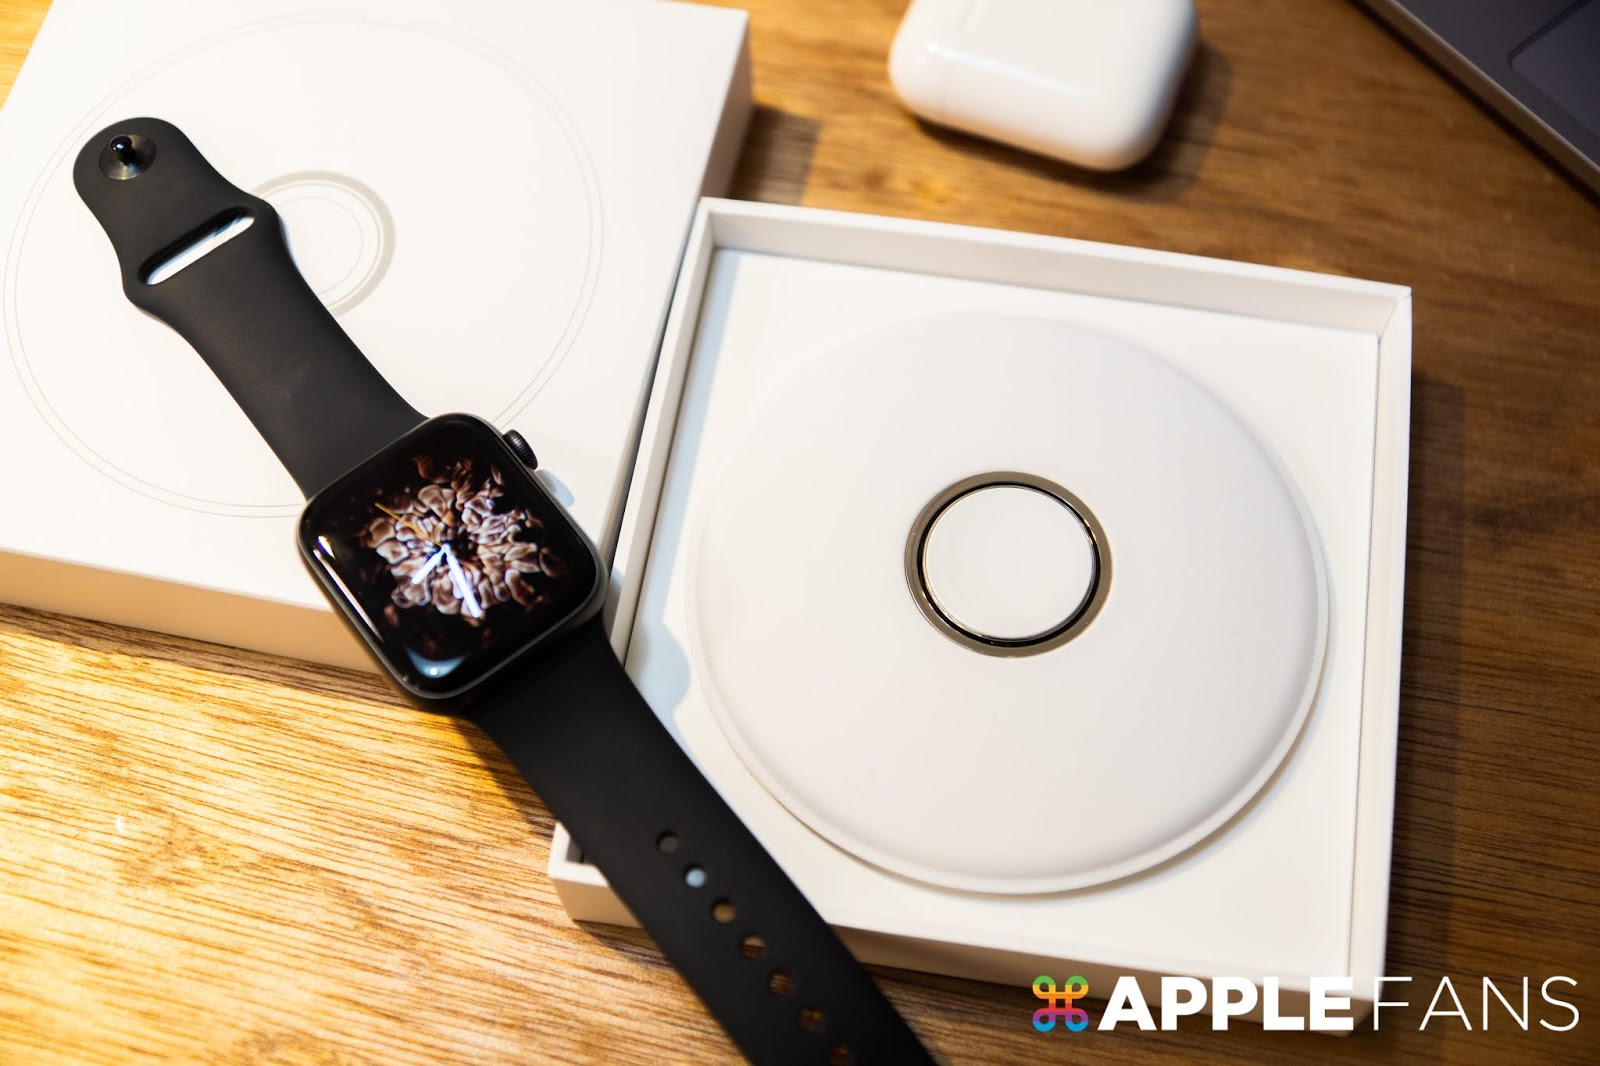 開箱 蘋果原廠apple Watch 磁性充電座 精品等級的開箱體驗 蘋果迷applefans